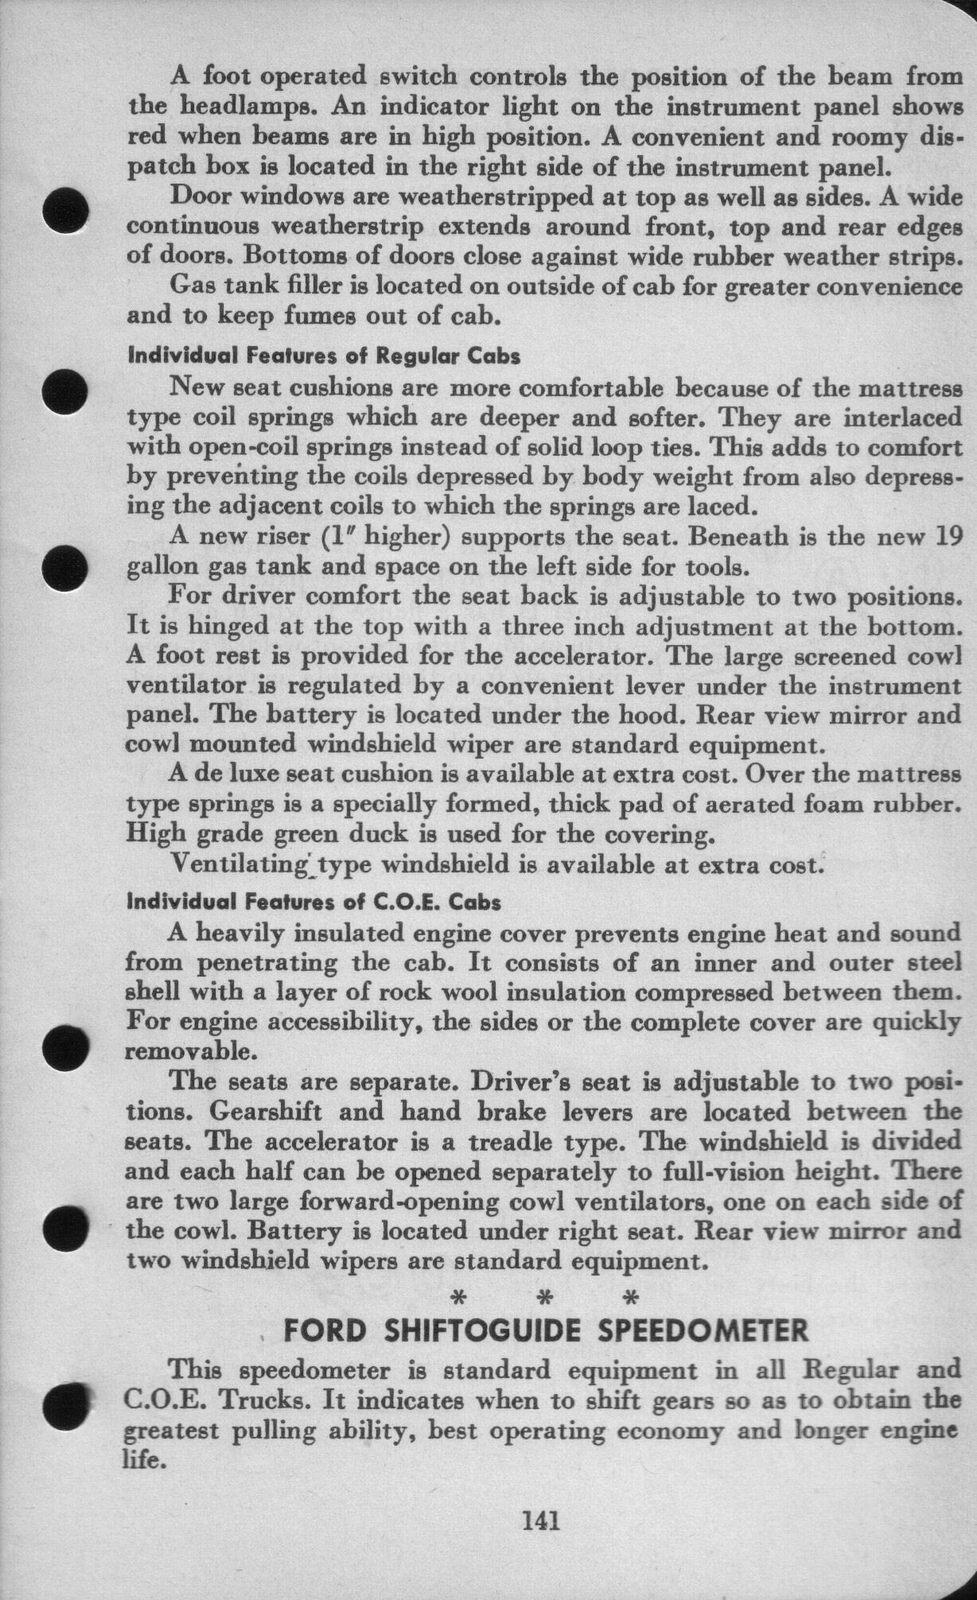 n_1942 Ford Salesmans Reference Manual-141.jpg